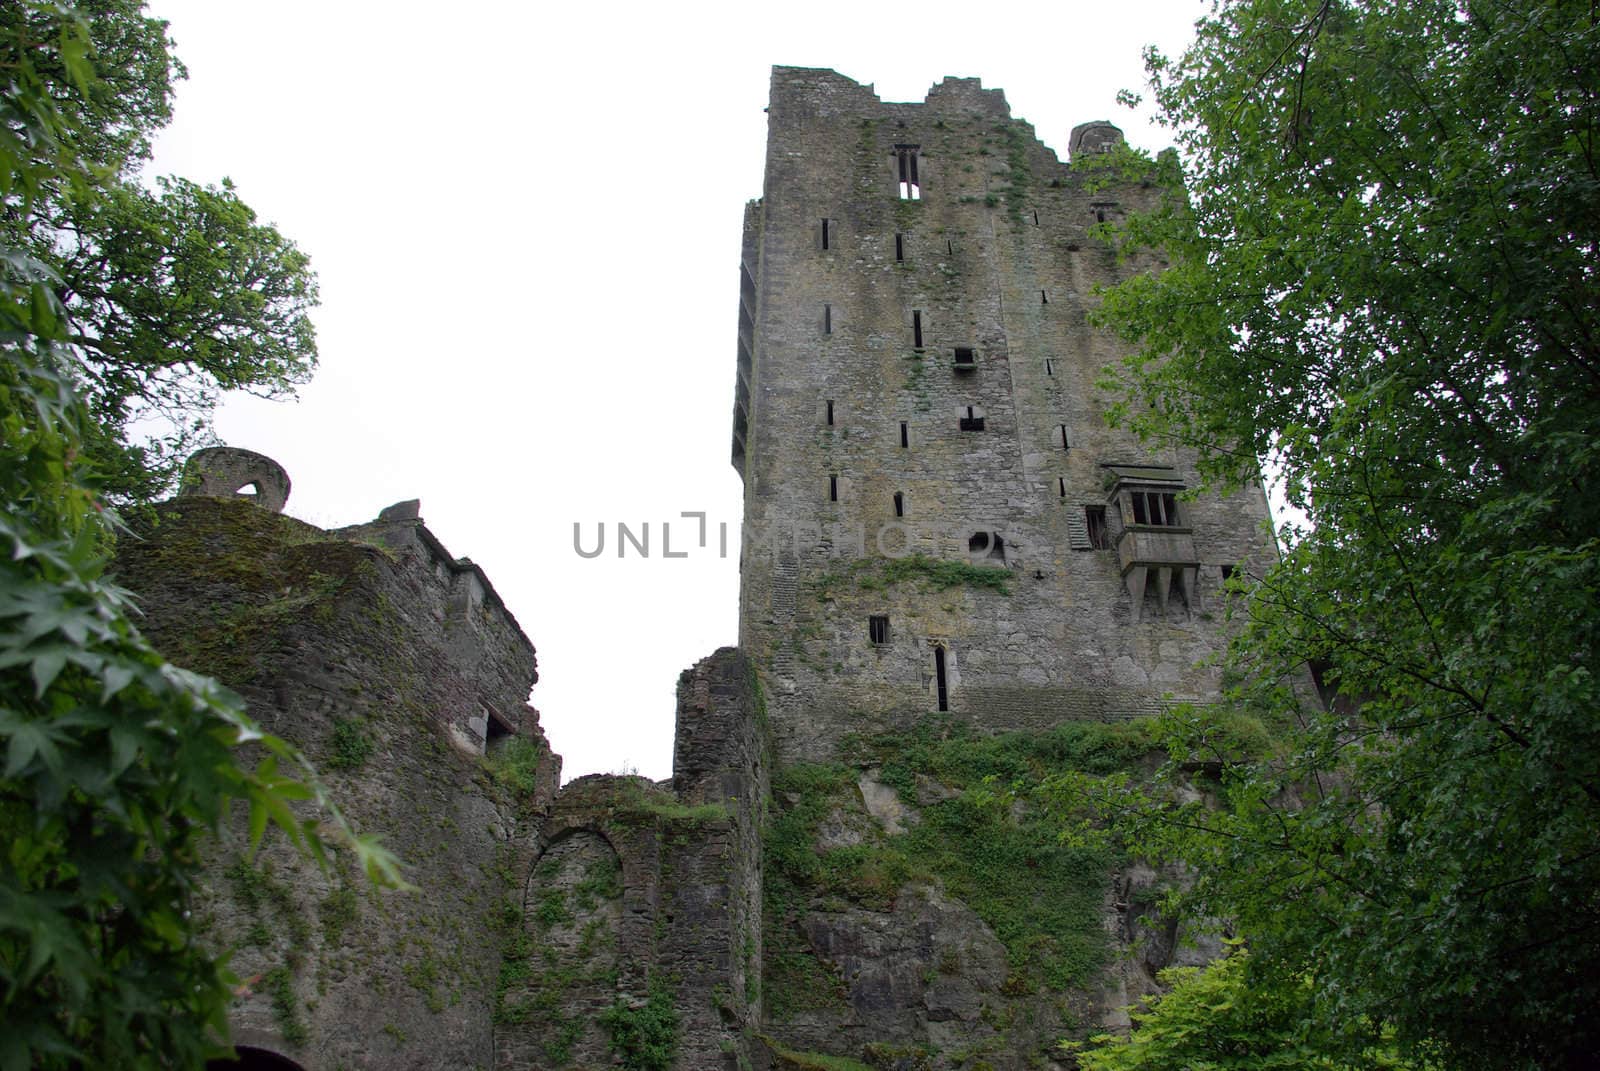 A side view of Blarney Castle in Ireland